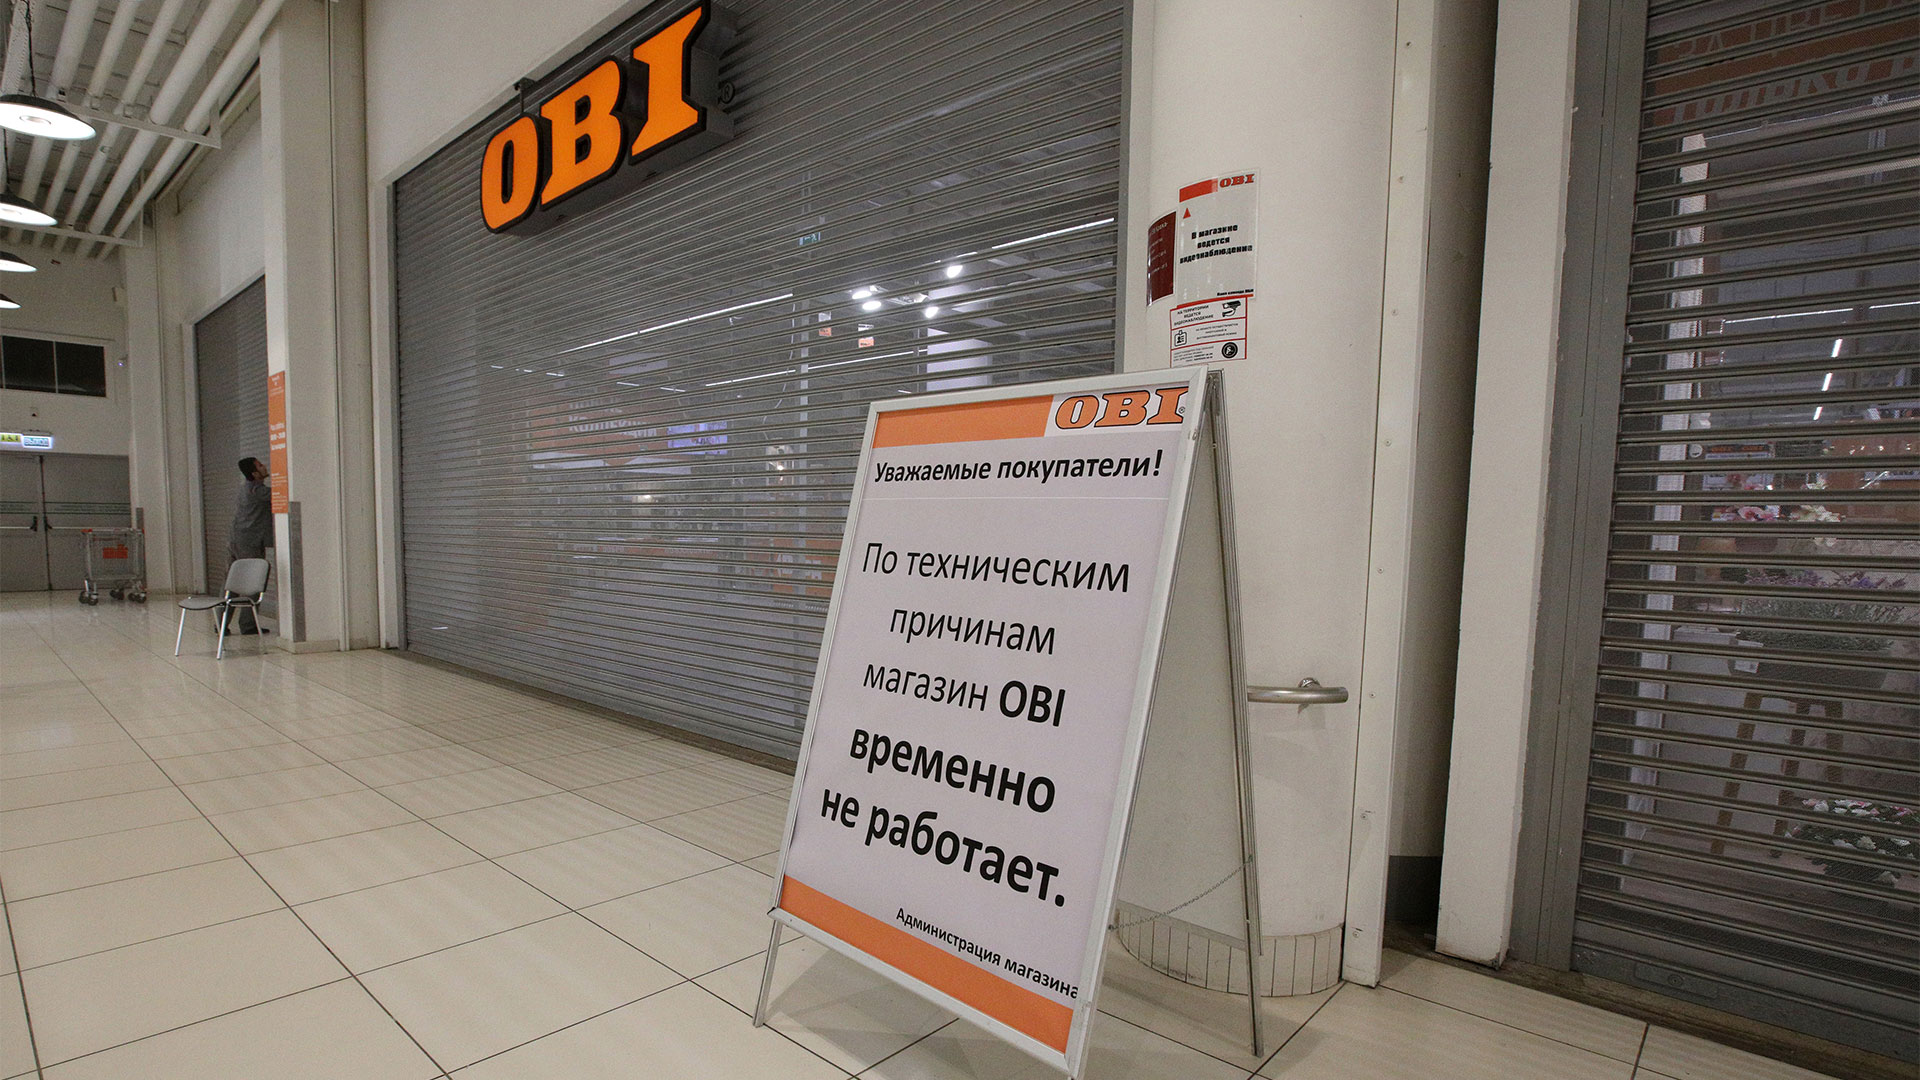 Obi-Baumarkt in Moskau | picture alliance/dpa